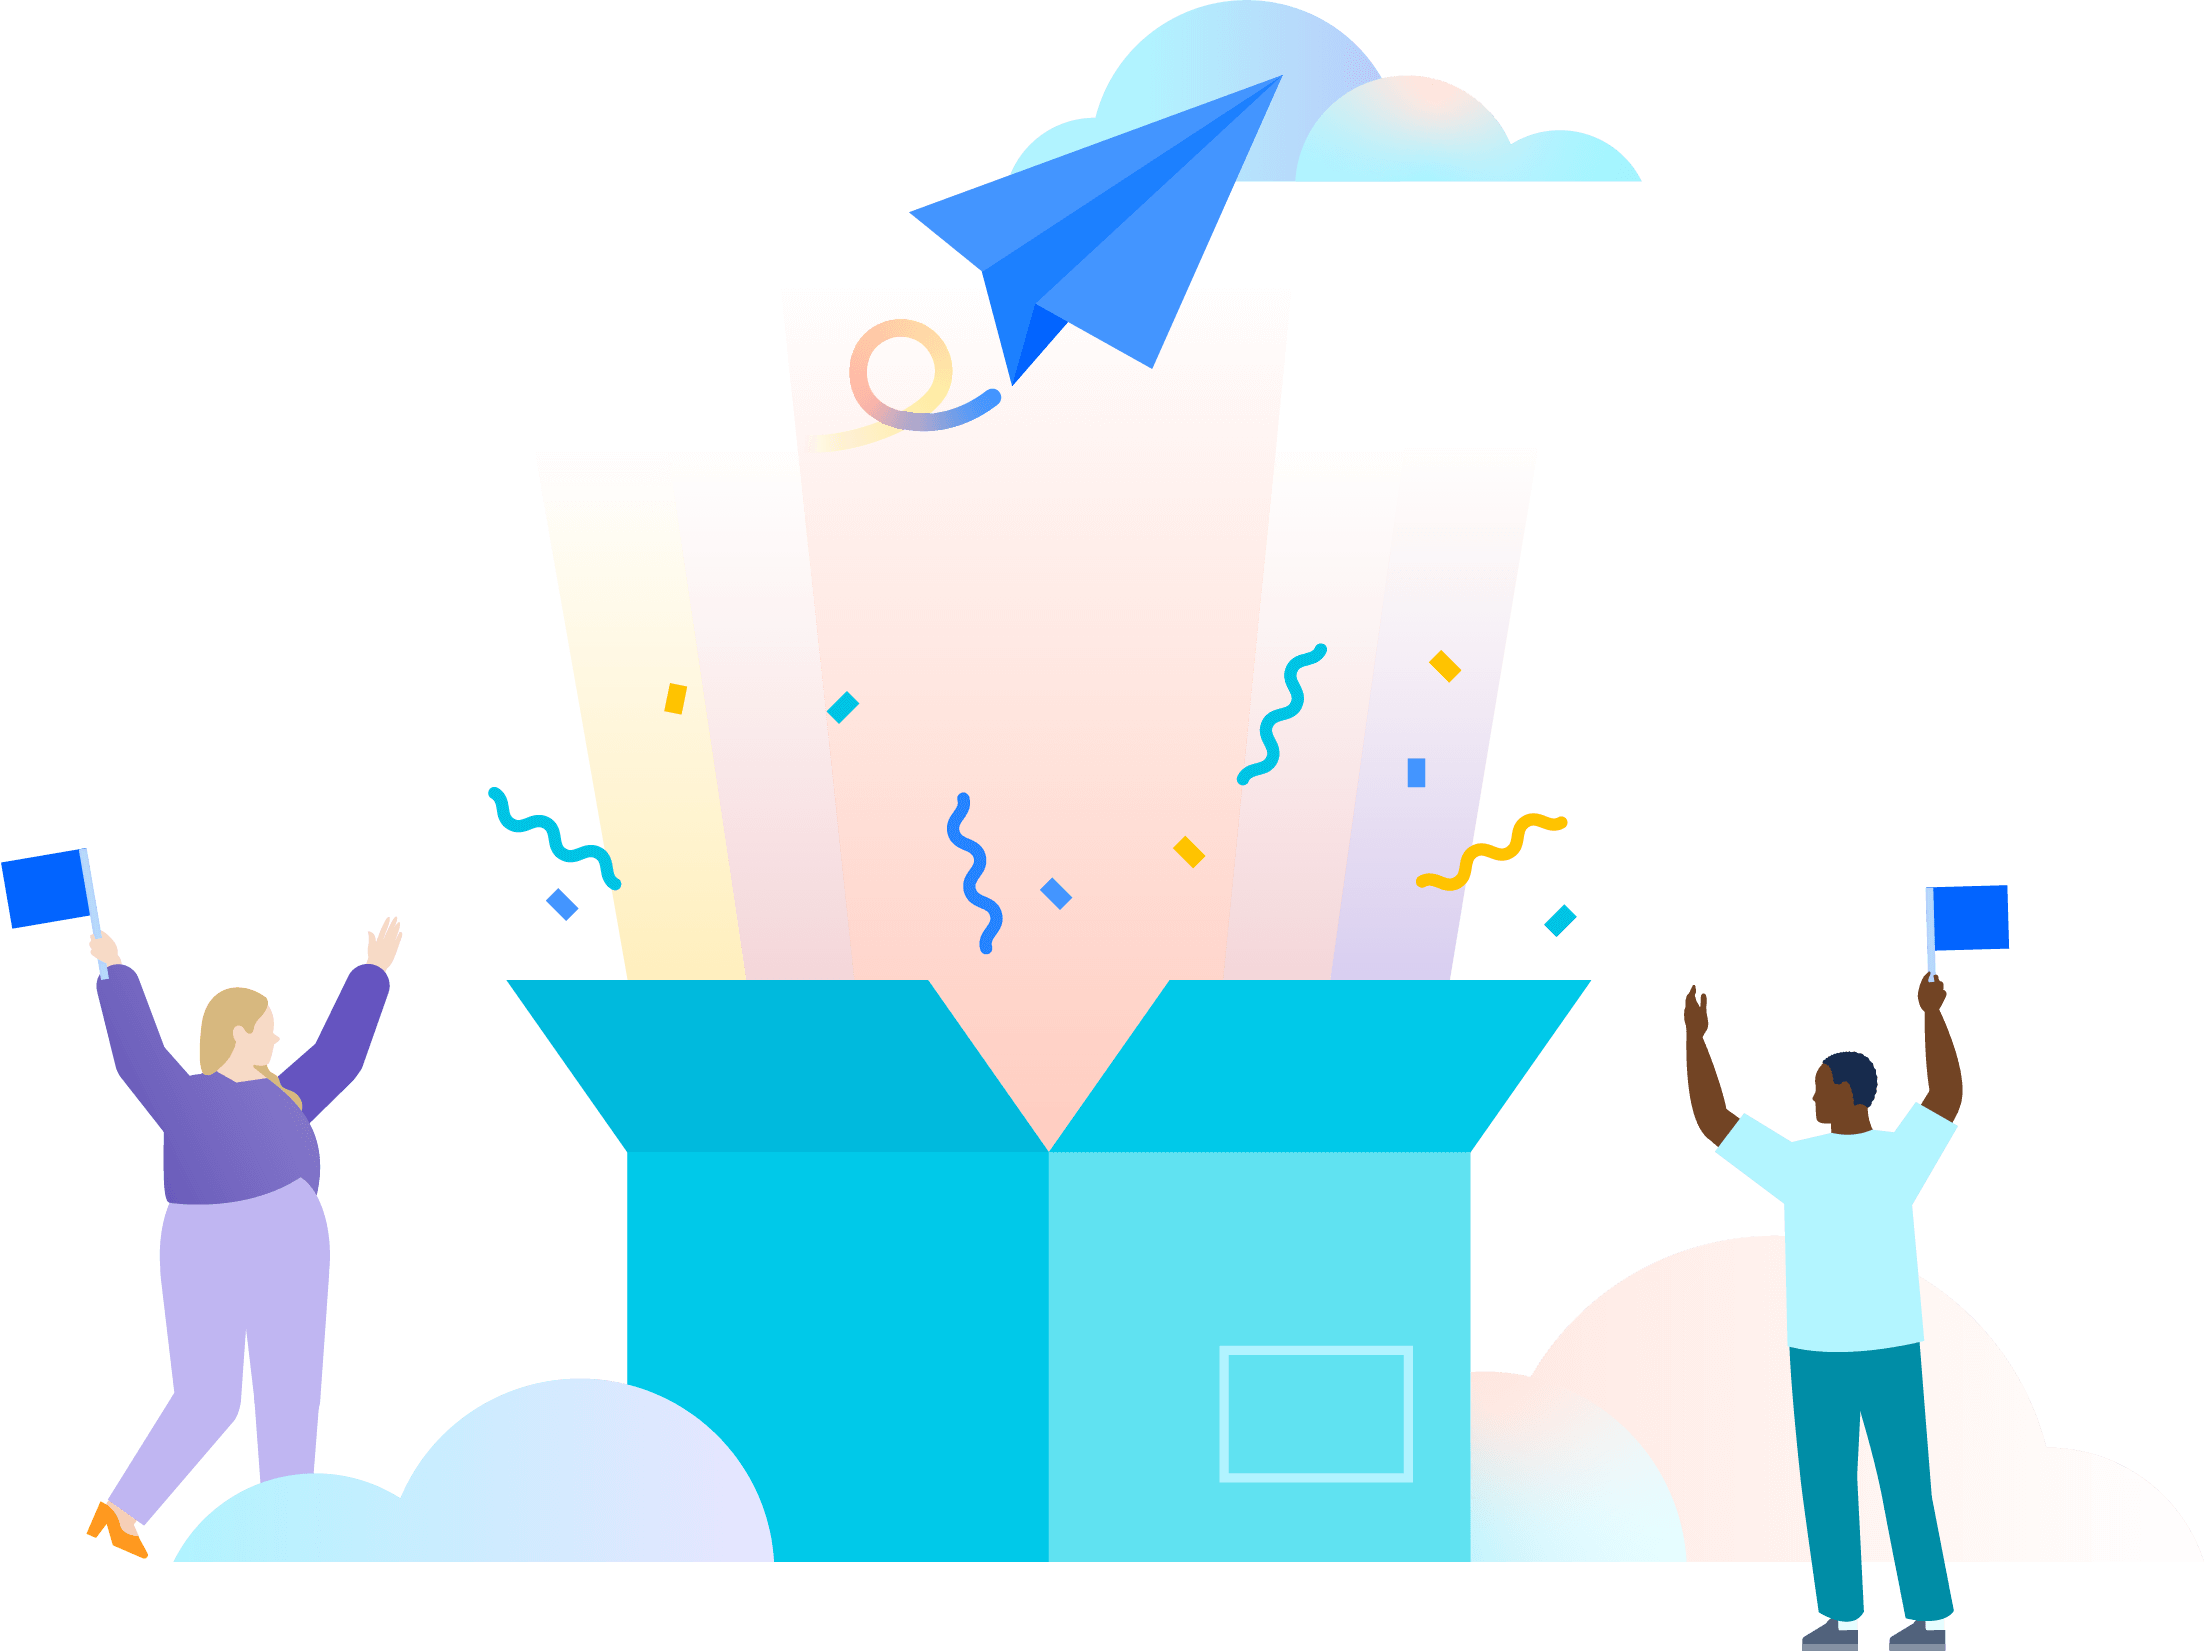 Eine Abbildung von zwei Personen, die das Öffnen einer großen, überdimensionalen blaugrünen Schachtel feiern, aus der bunte Lichtstrahlen, Konfetti und ein blaues Papierflugzeug kommen, das auf Wolken zufliegt.